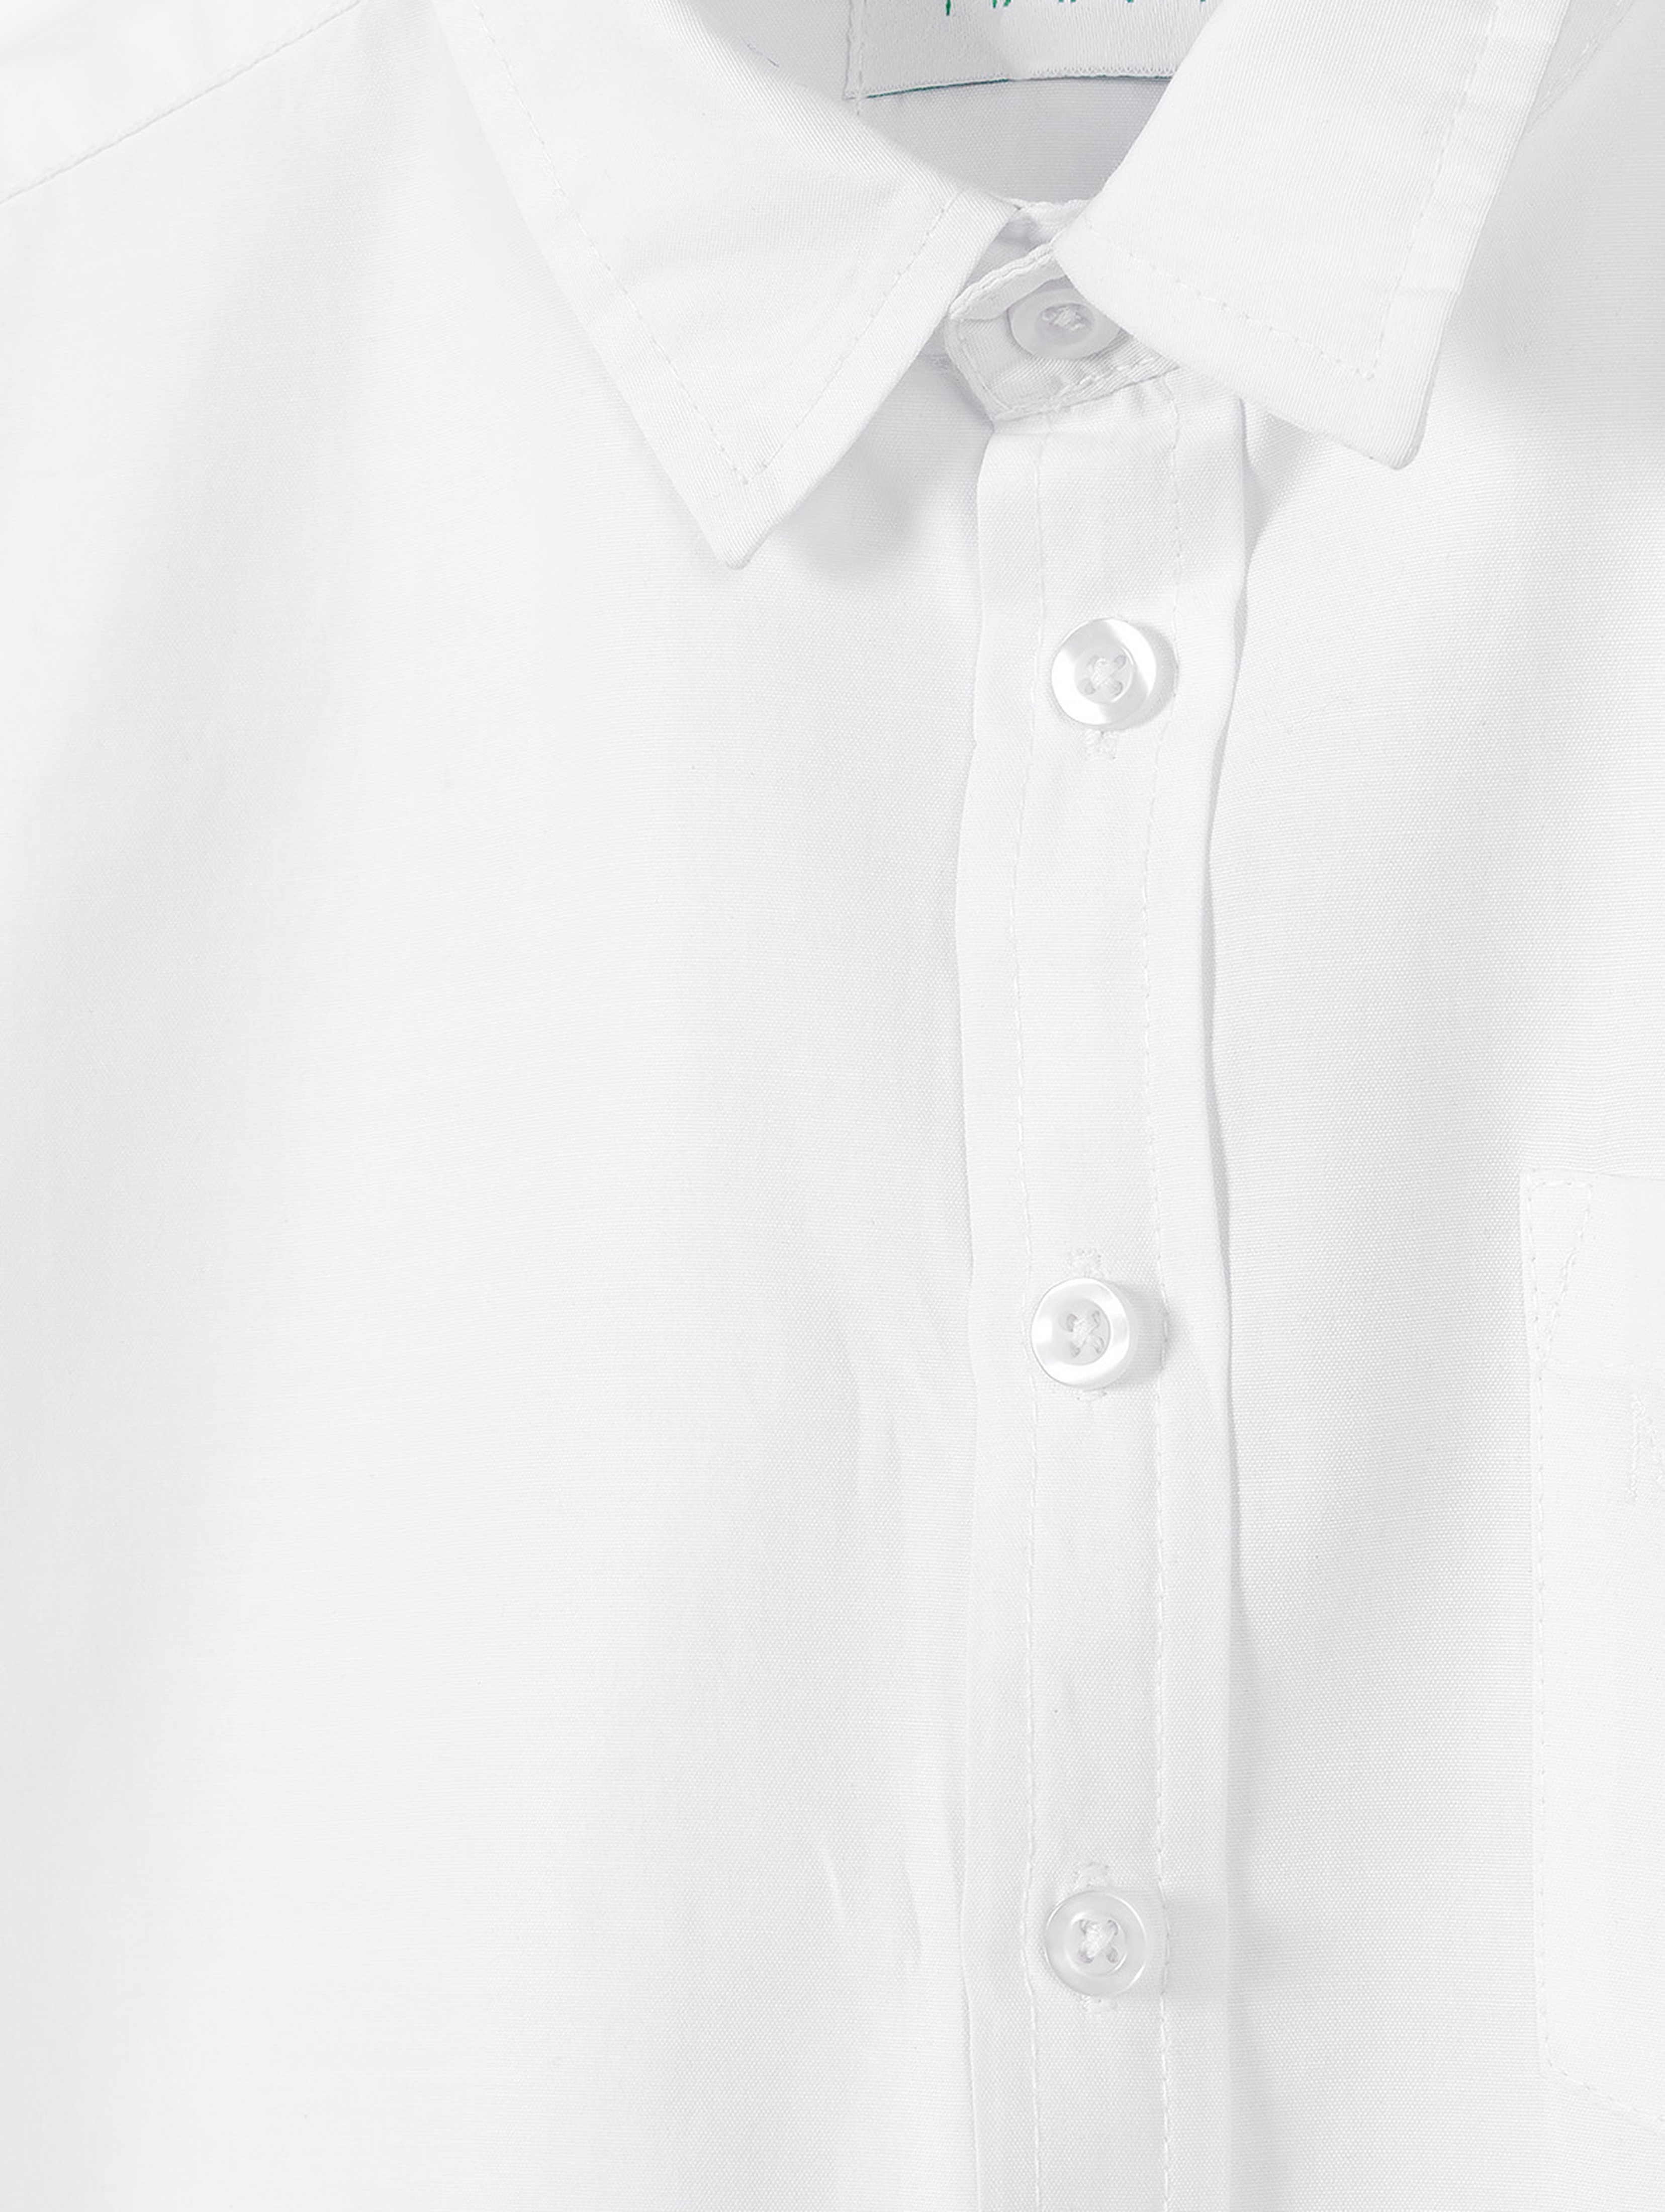 Biała koszula bawełniana dla chłopca z krótkim rękawem